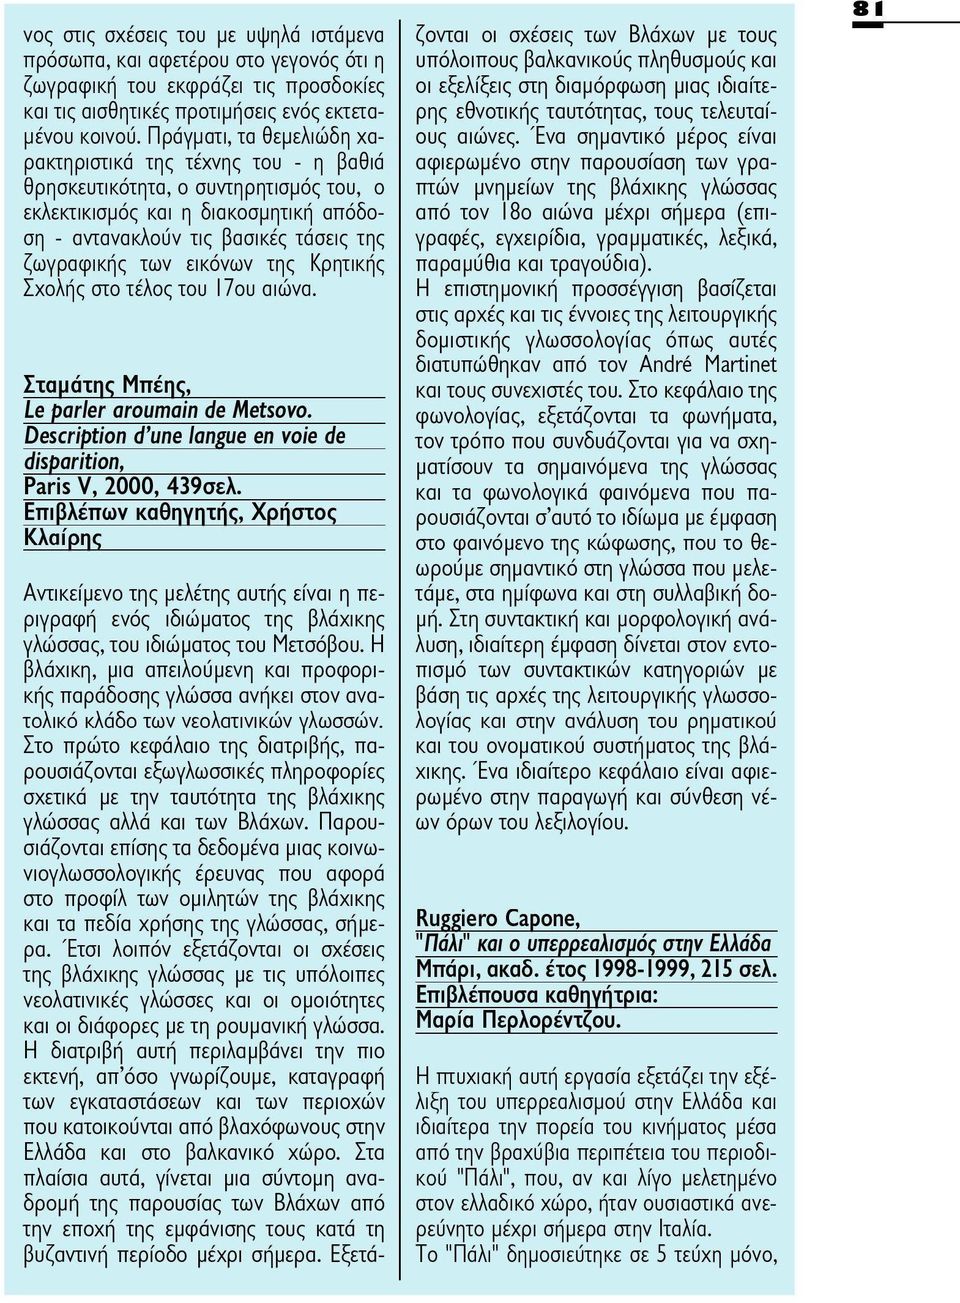 εικόνων της Κρητικής Σχολής στο τέλος του 17ου αιώνα. Σταμάτης Μπέης, Îe parler aroumain de Metsovo. Description d'une langue en voie de disparition, Paris V, 2000, 439σελ.